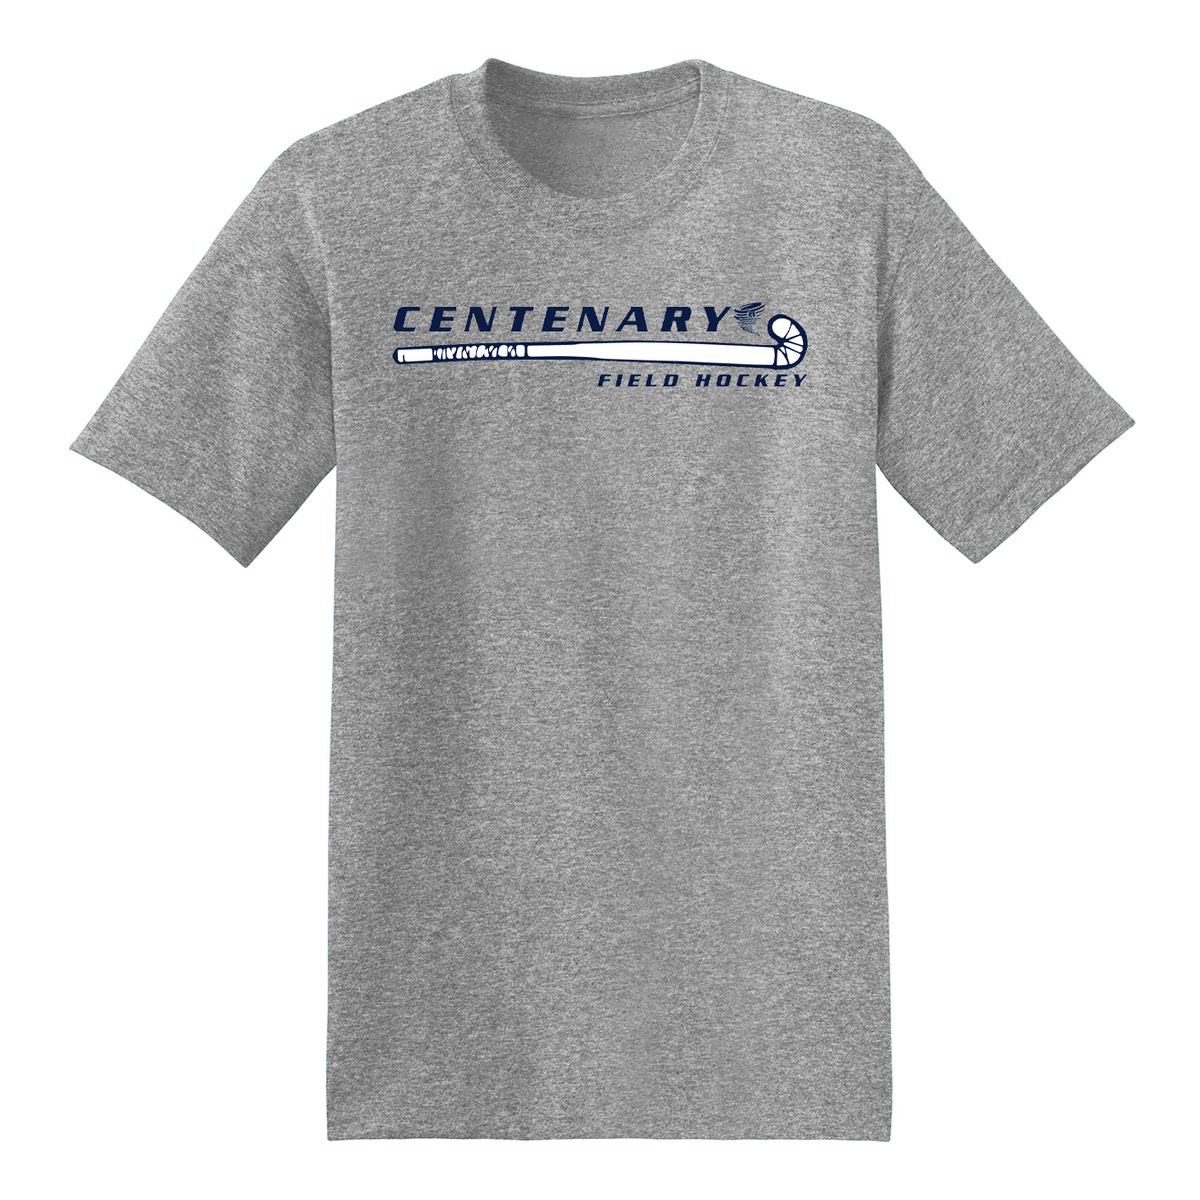 Centenary University Field Hockey T-Shirt